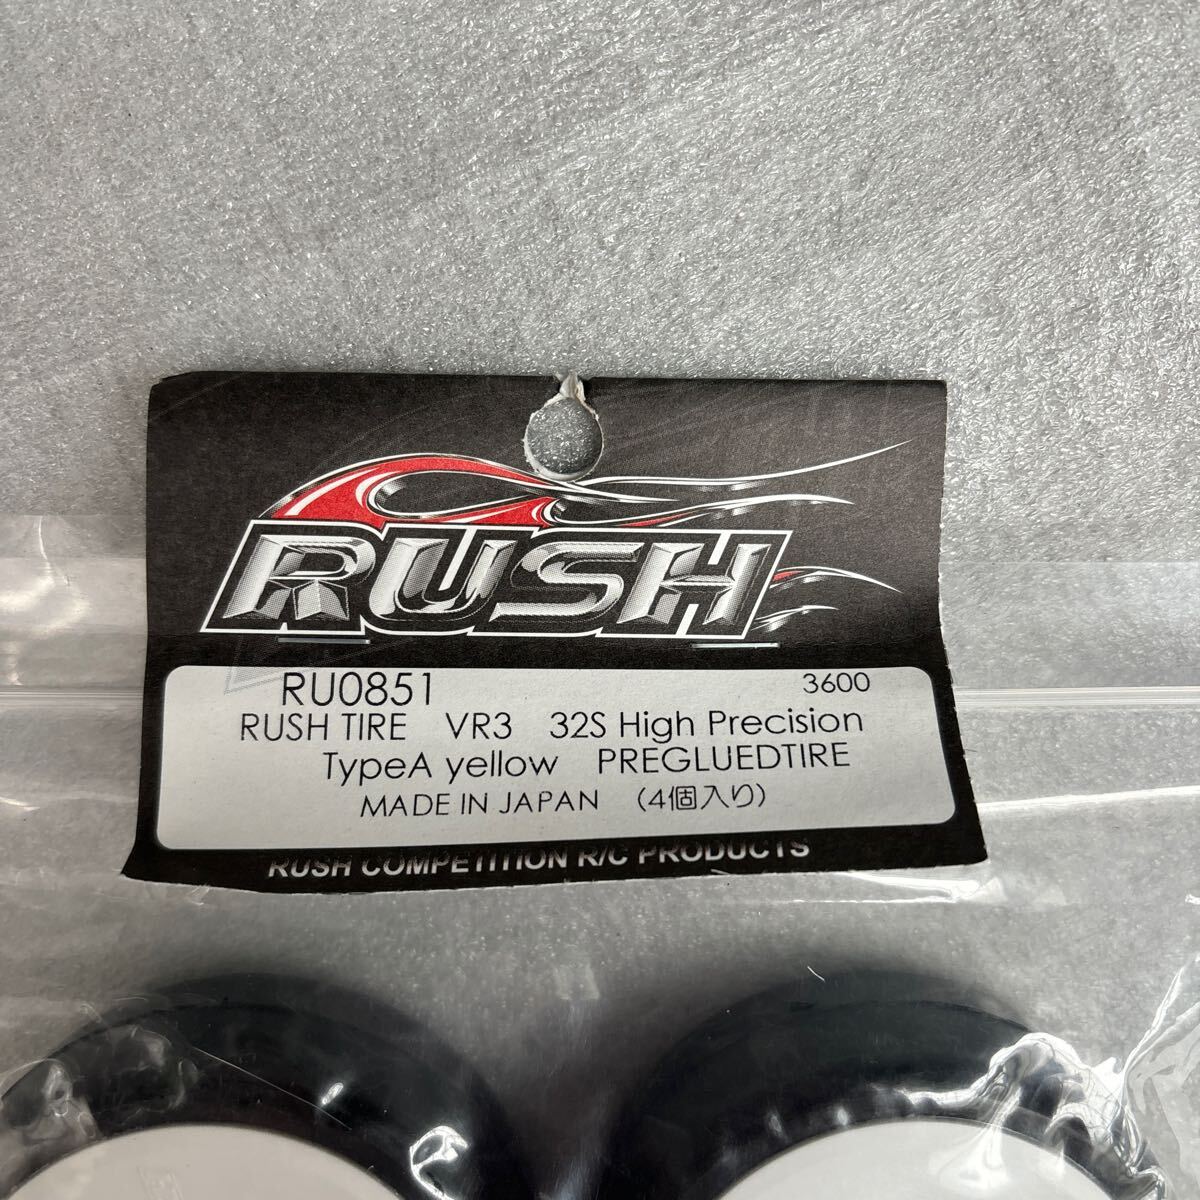 RUSH ラジコン タイヤ 1/10 ru0851 vr3 新品未開封 の画像2